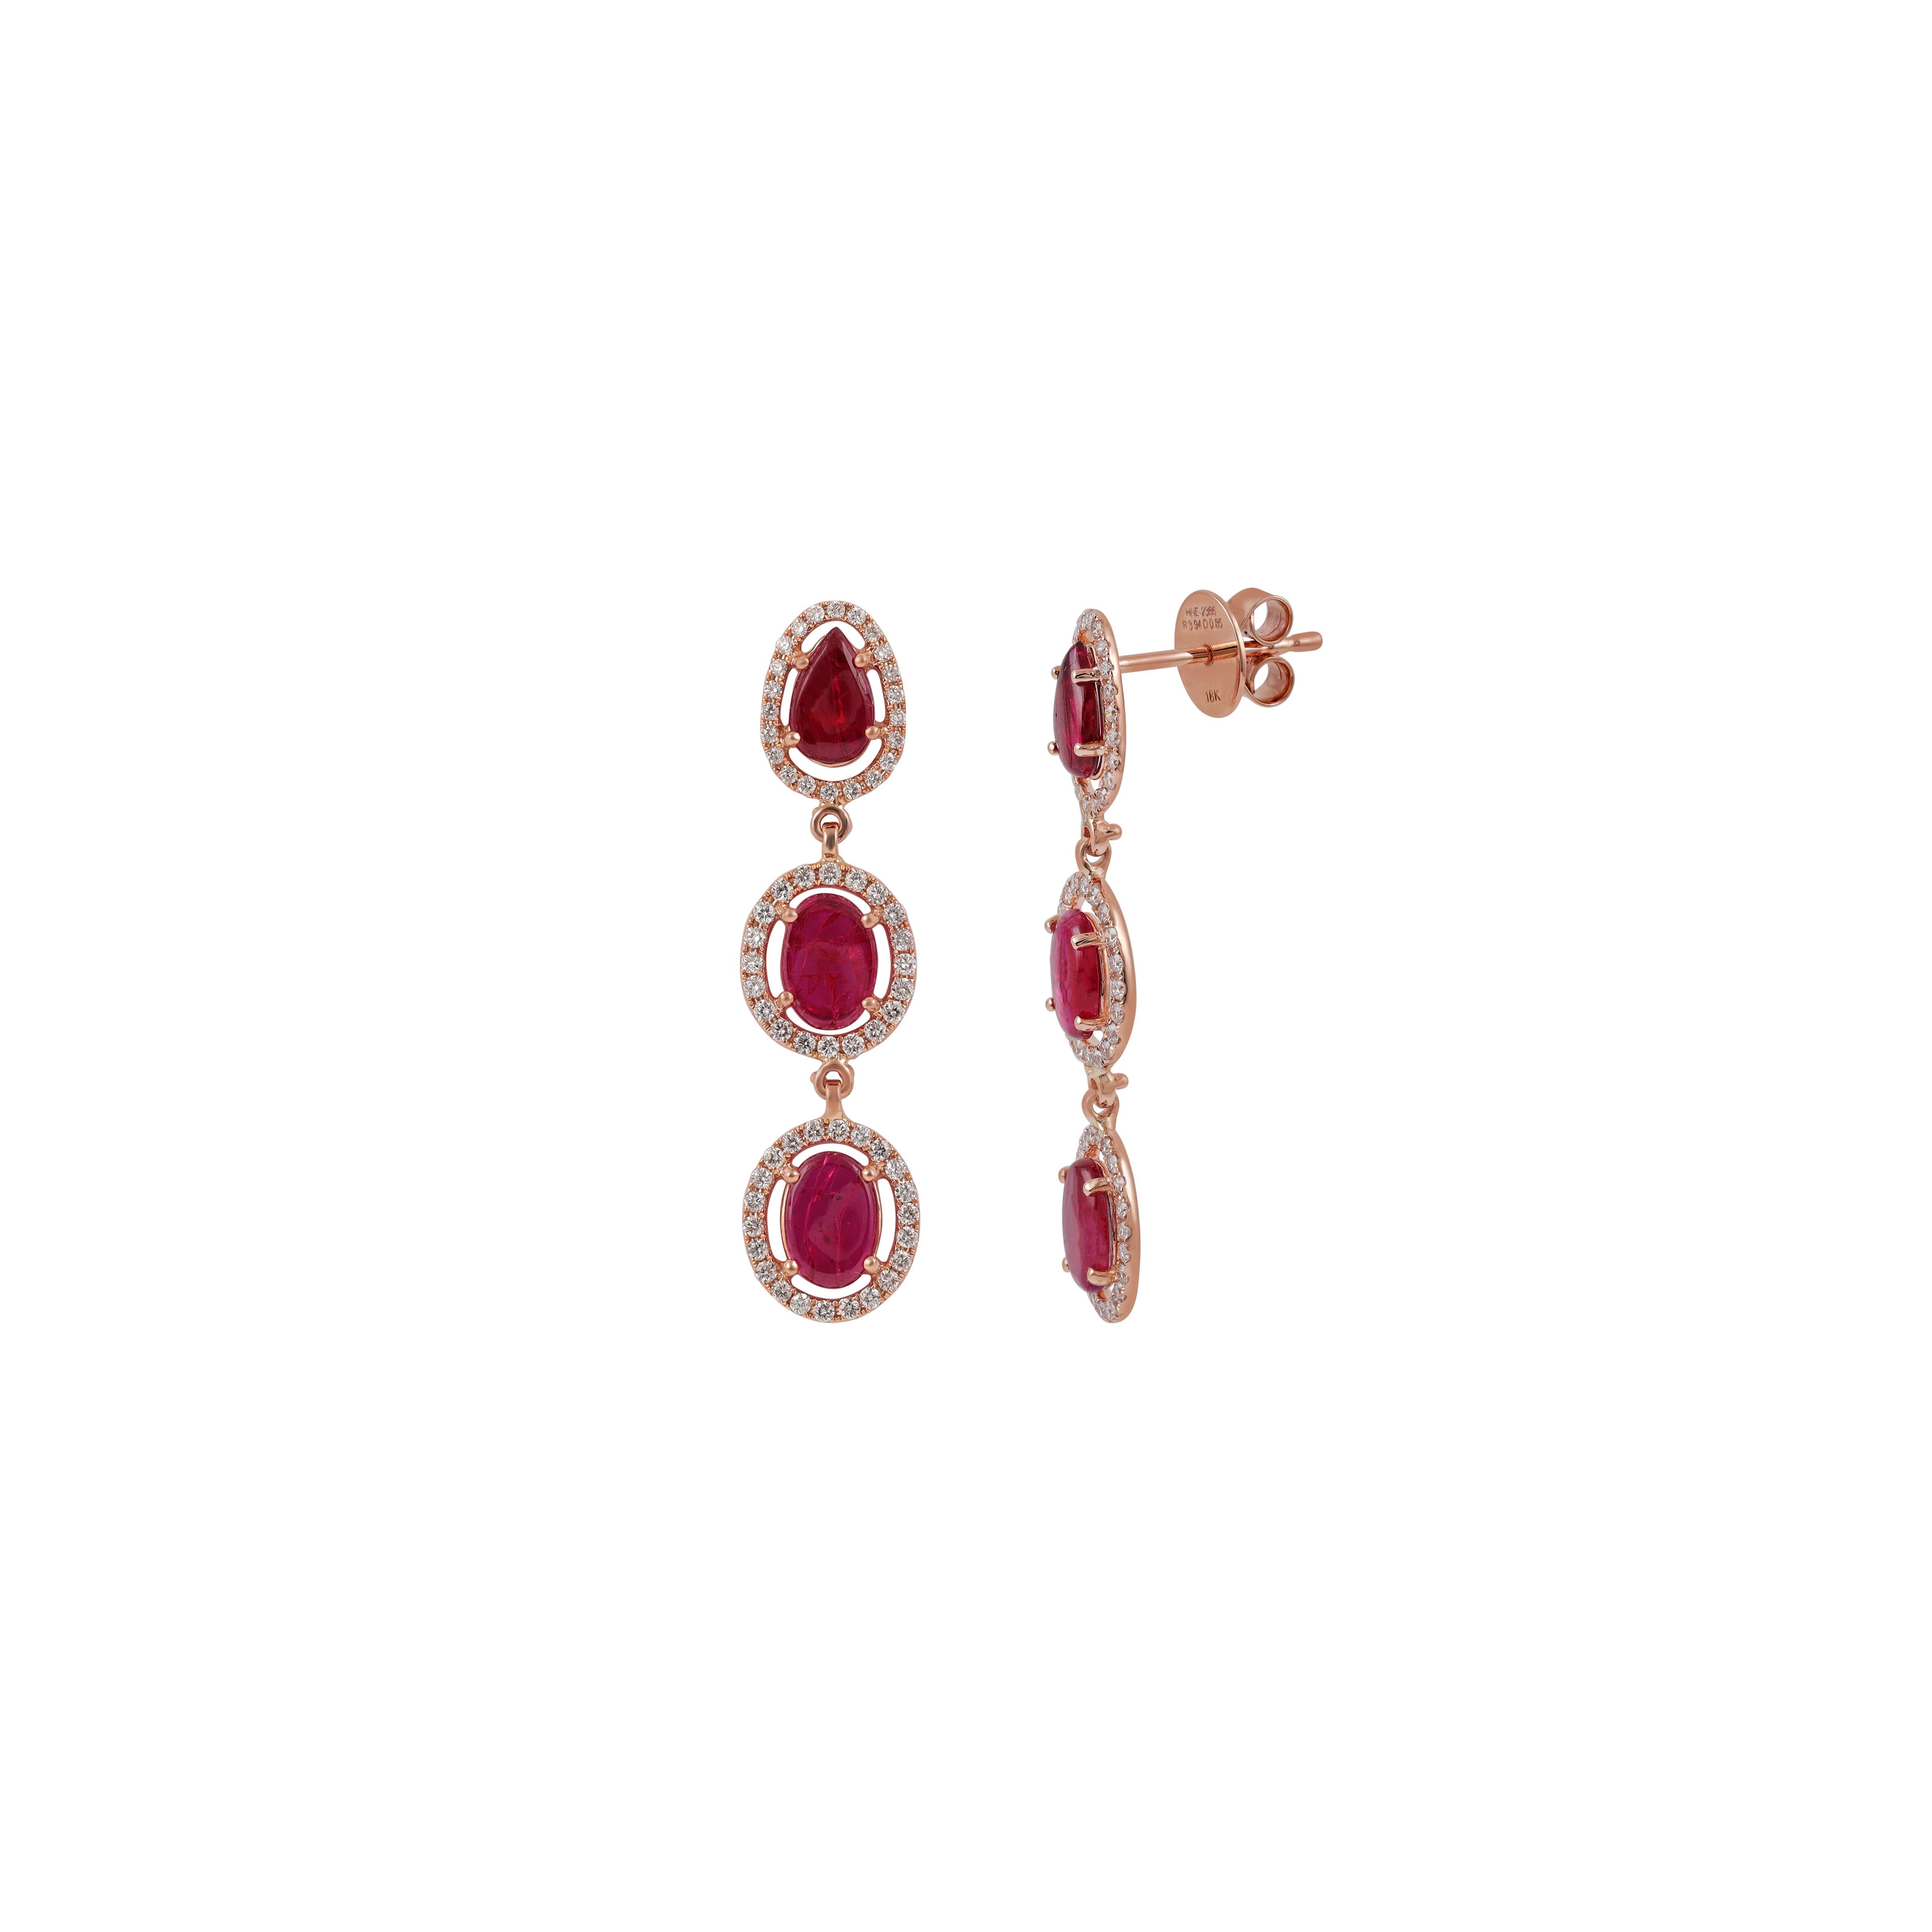 Diese sind eine exklusive Ohrringe mit Rubin & Diamanten verfügt über 6 Stück Rubine Gewicht 3,94 Karat, mit 128 Stück runden Brillantschliff von Diamanten Gewicht 0,85 Karat umgeben, Diese gesamte Ohrringe sind in 18k Roségold Gewicht 4,62 Gramm